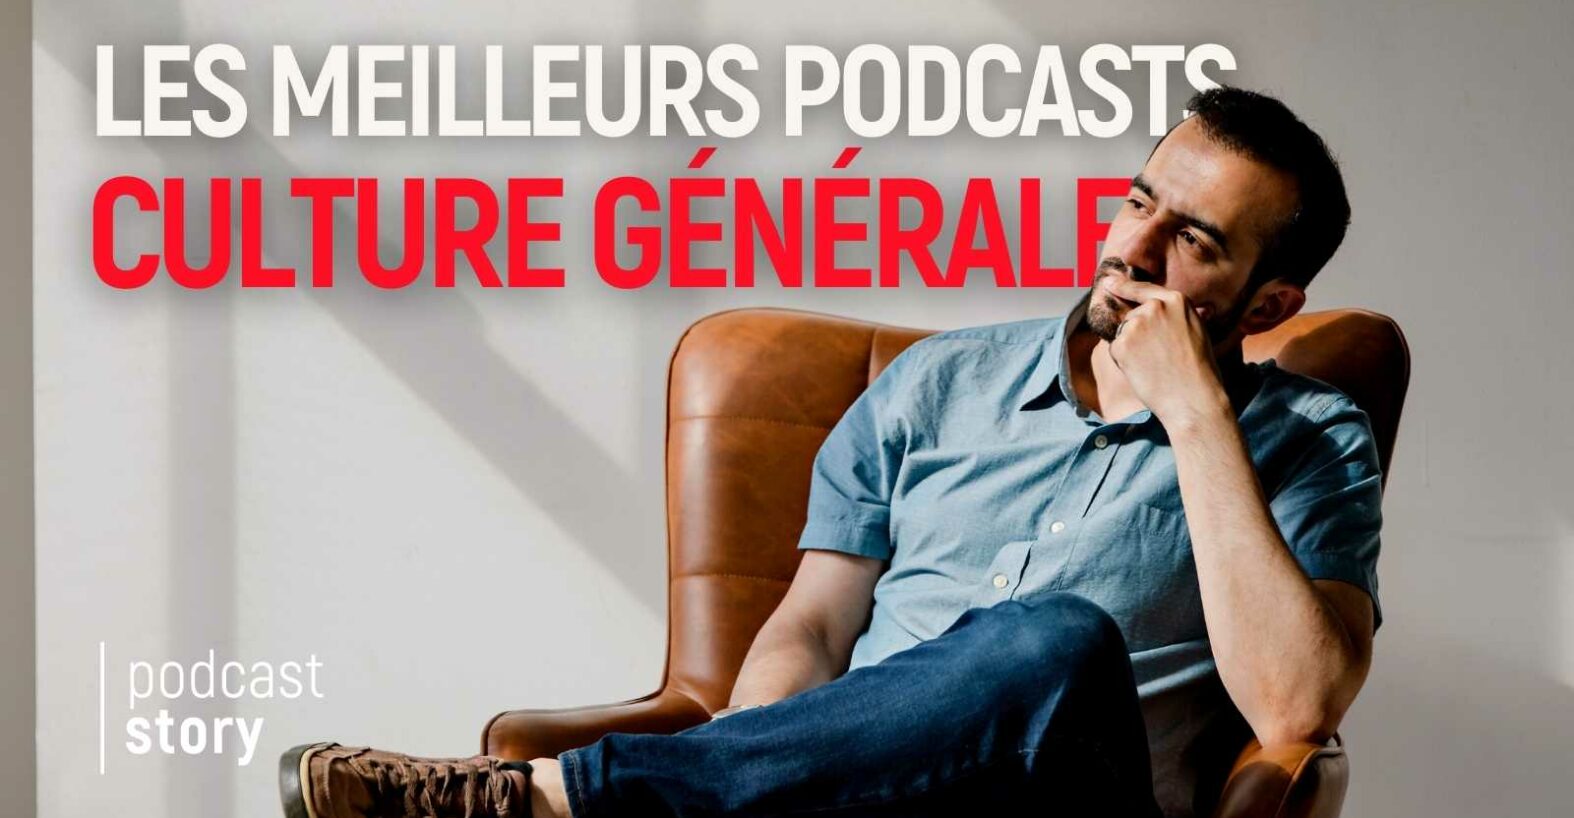 Les 5 meilleurs podcasts gratuits pour booster sa culture générale